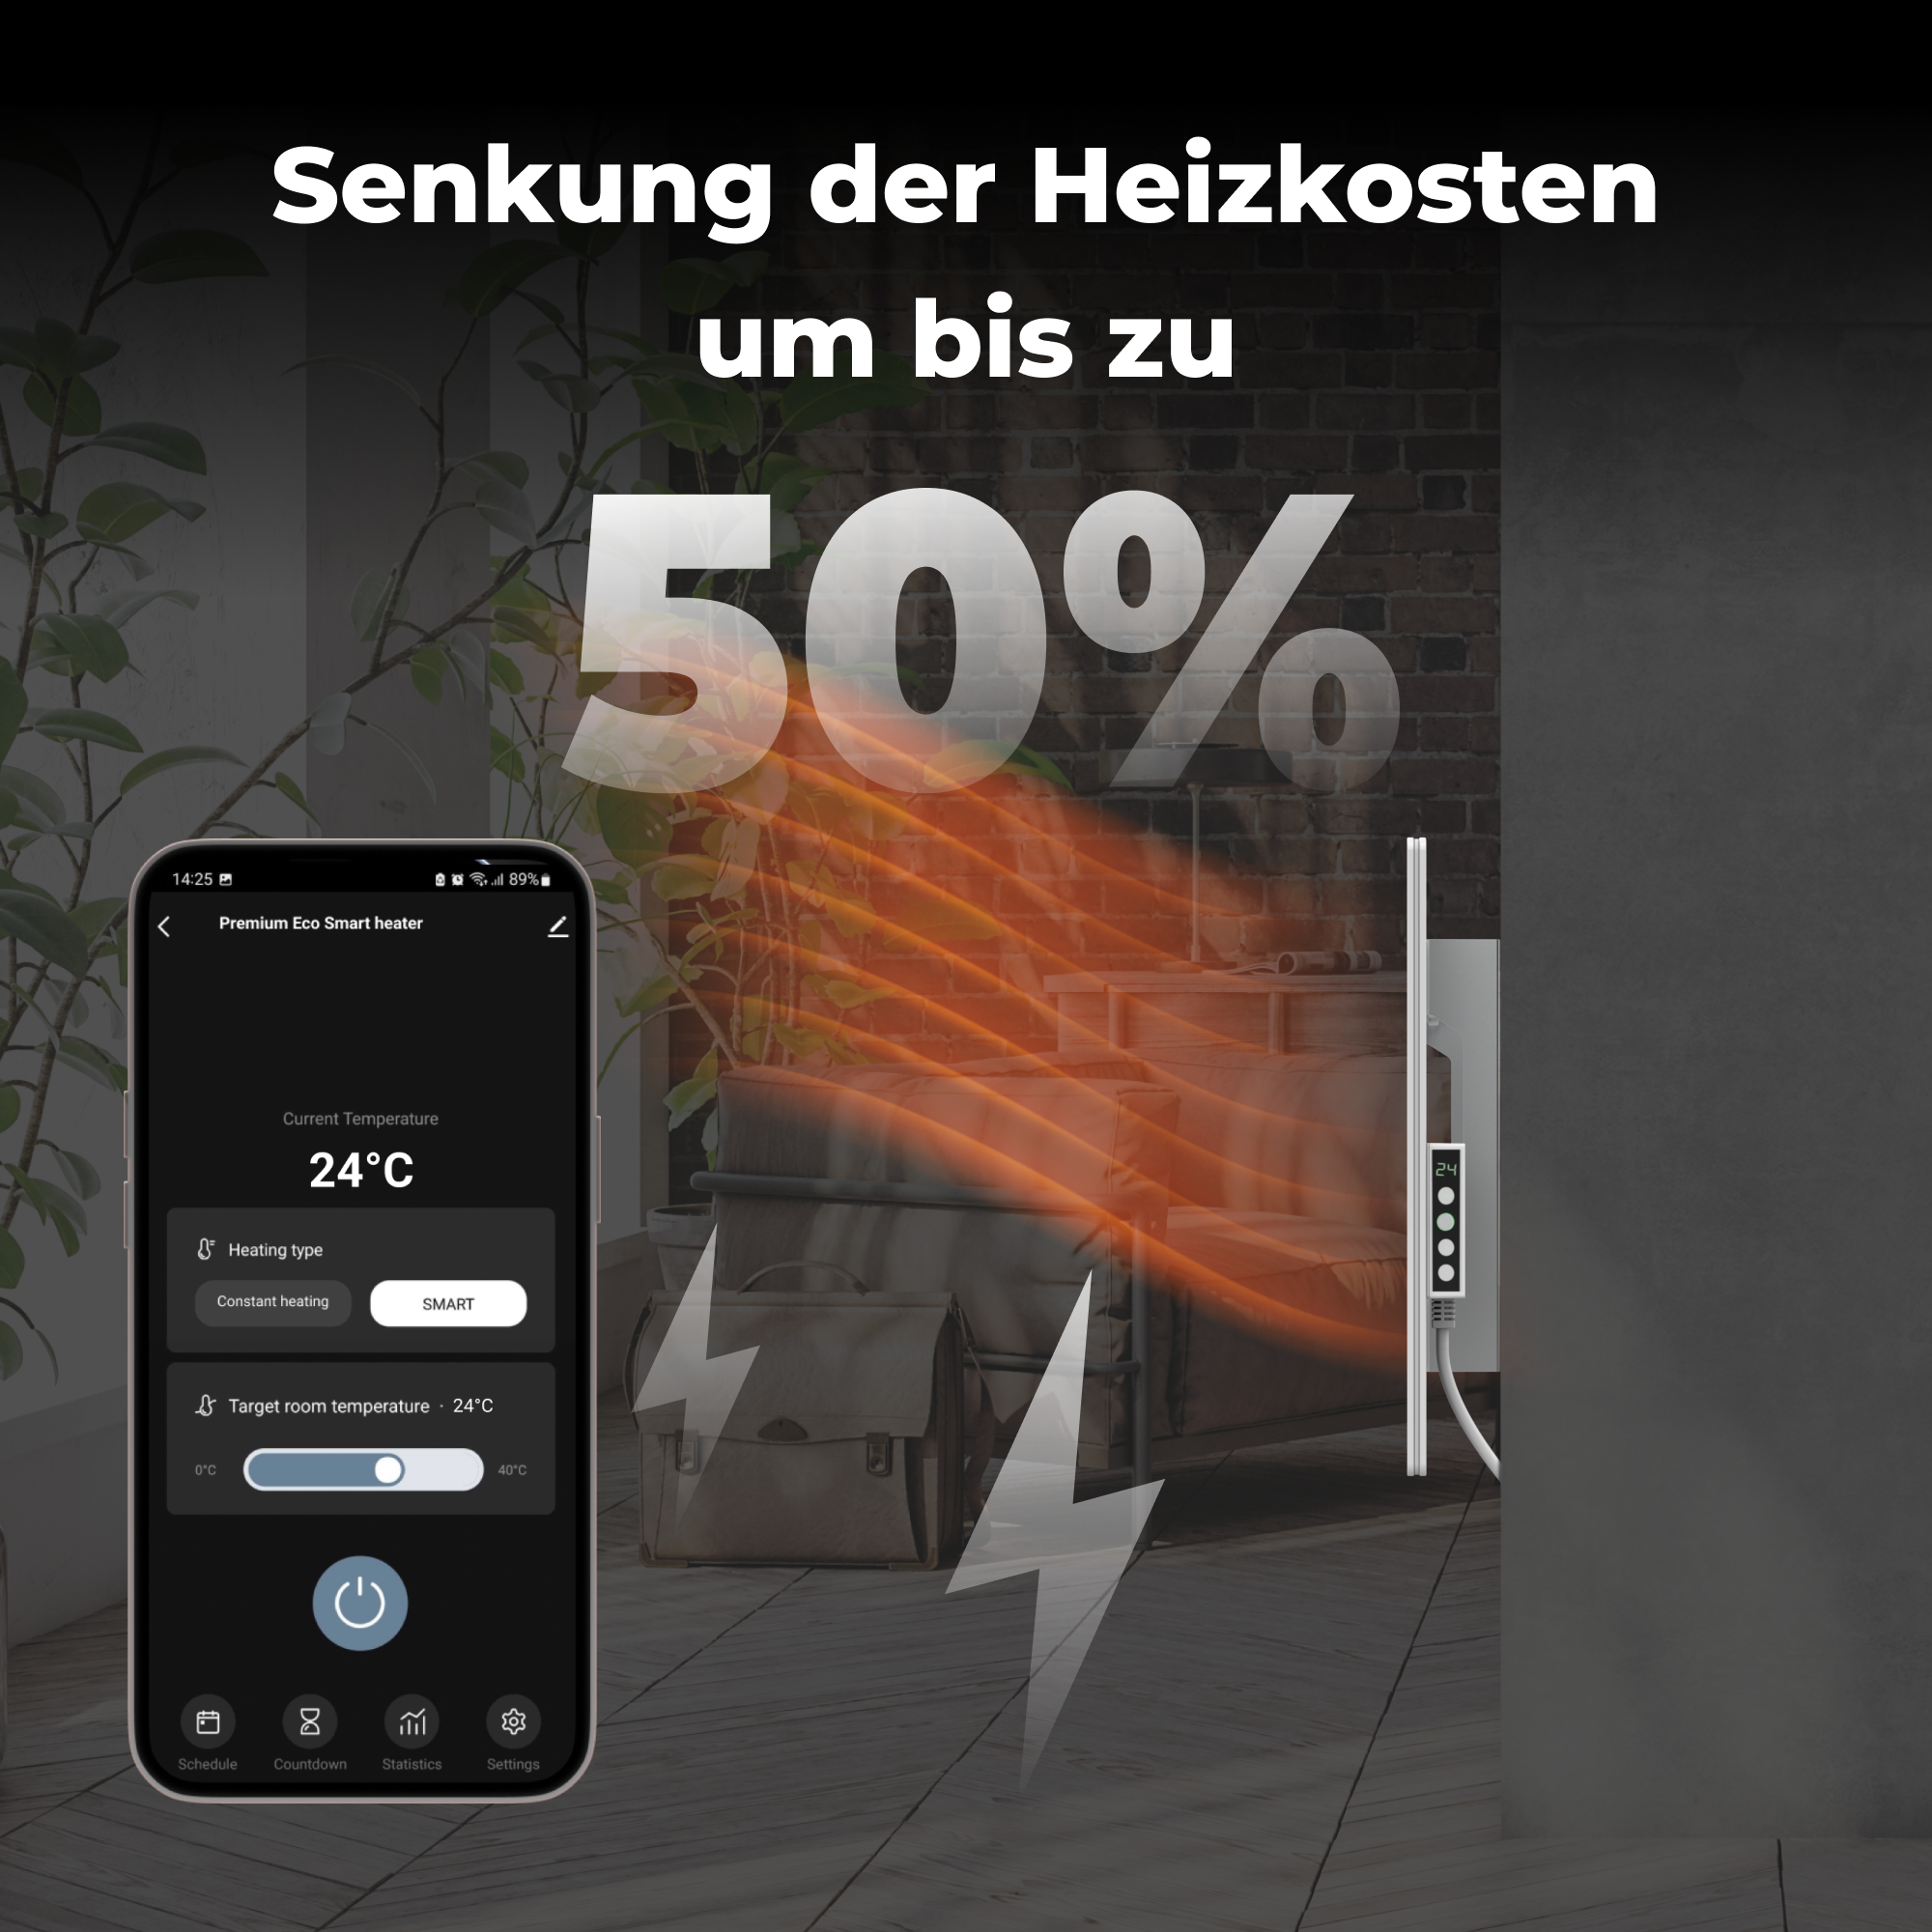 AENO Premium Eco Smart energiesparend, & Watt) gehärtetes W, Boden LED-Heizung Glas, GH3S, 700 Infrarot-Heizstrahler (700 Wandmontage